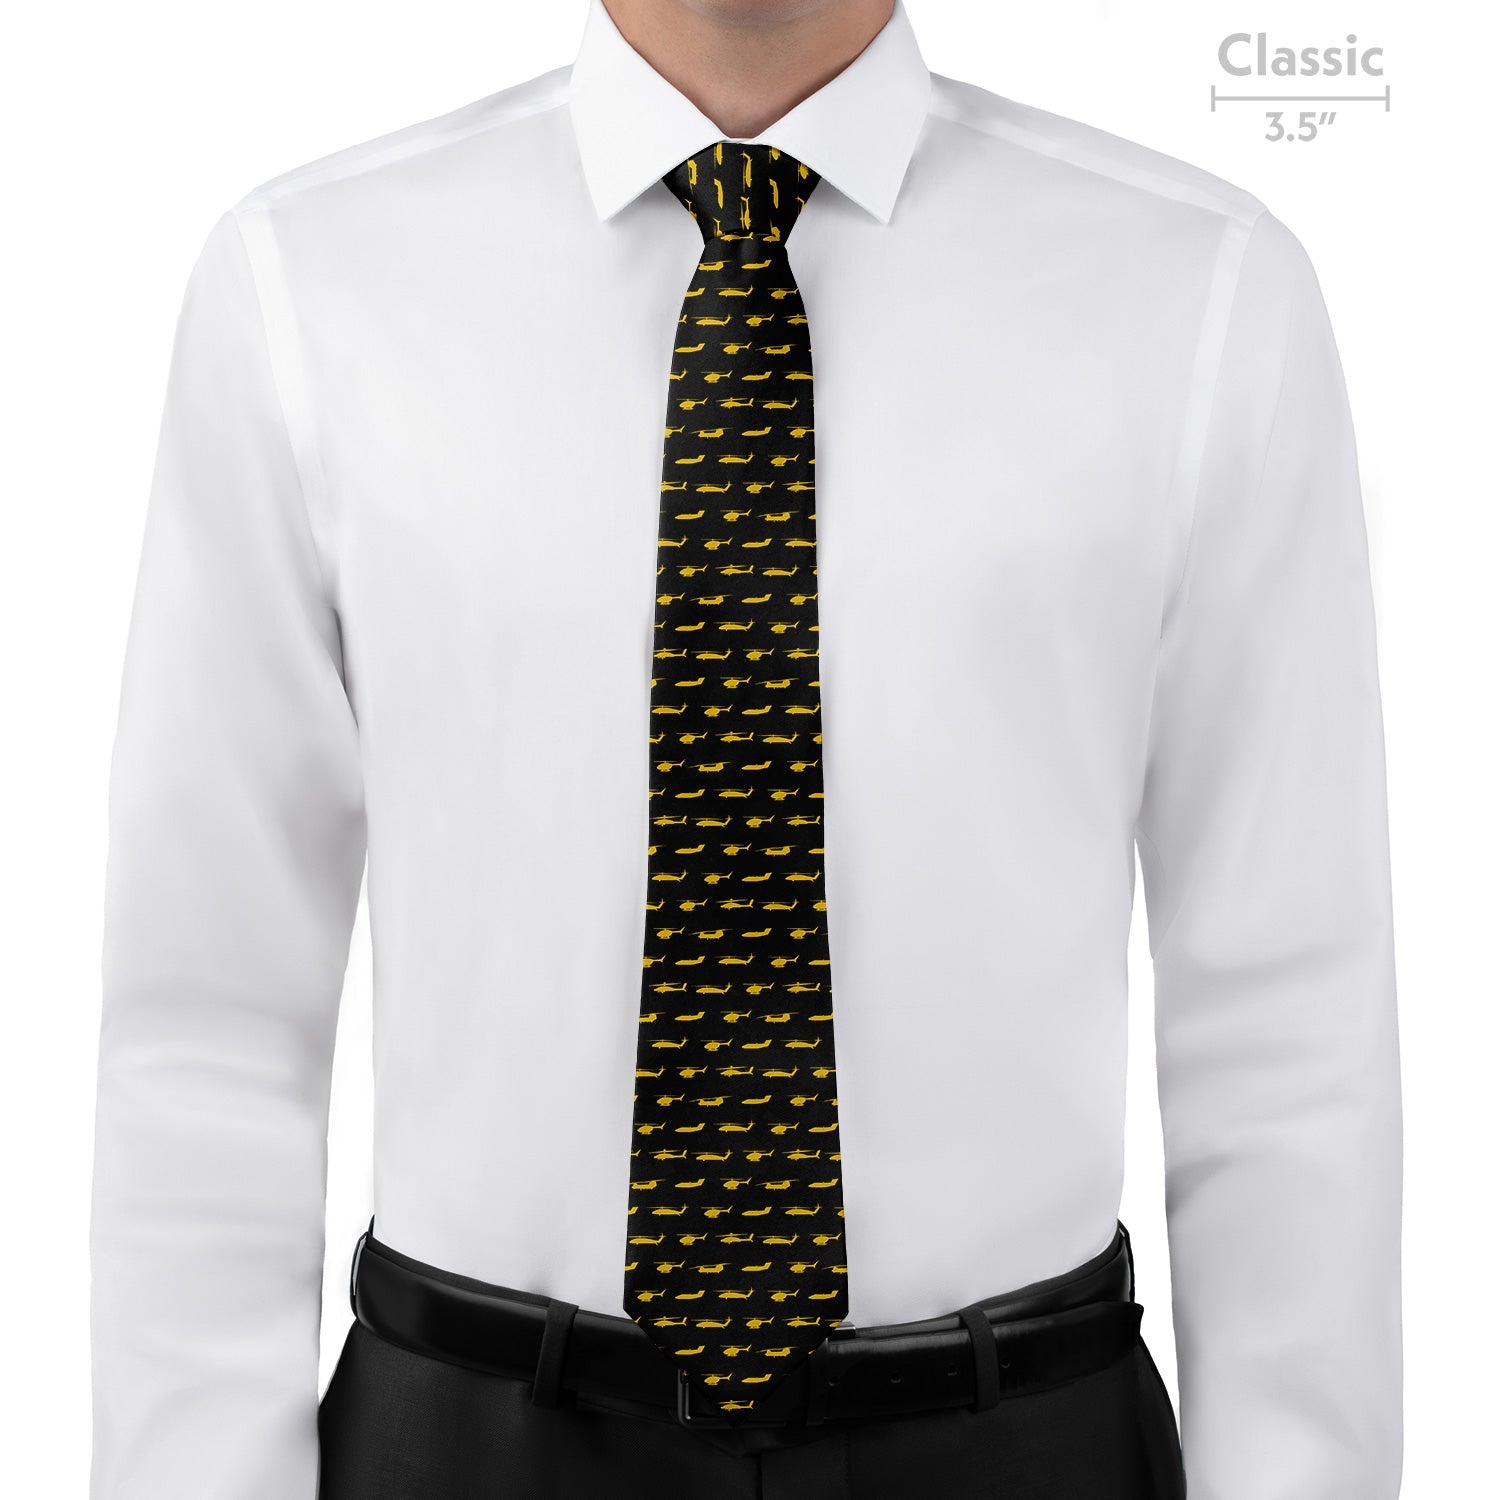 Army Aviation Necktie - Classic - Knotty Tie Co.